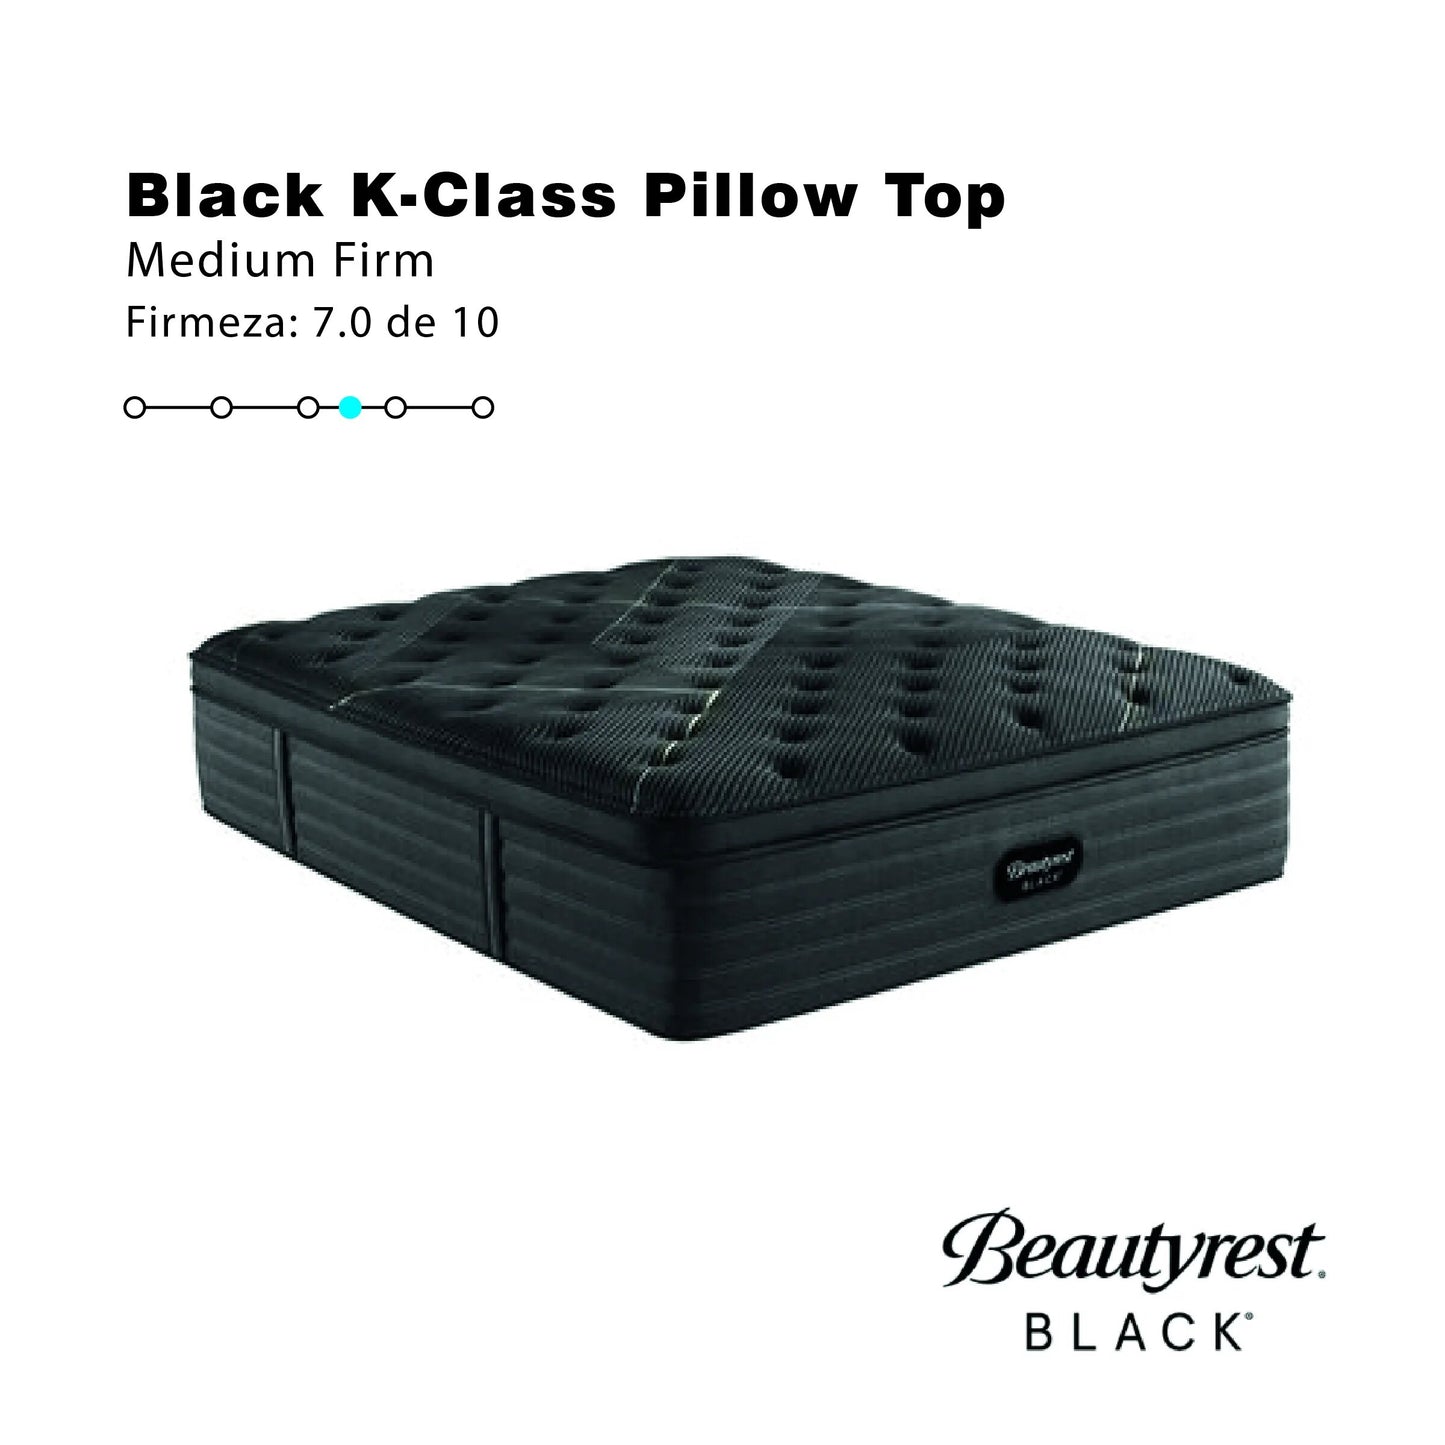 Colchón Beautyrest Black K-Class Medium Firm Pillow Top